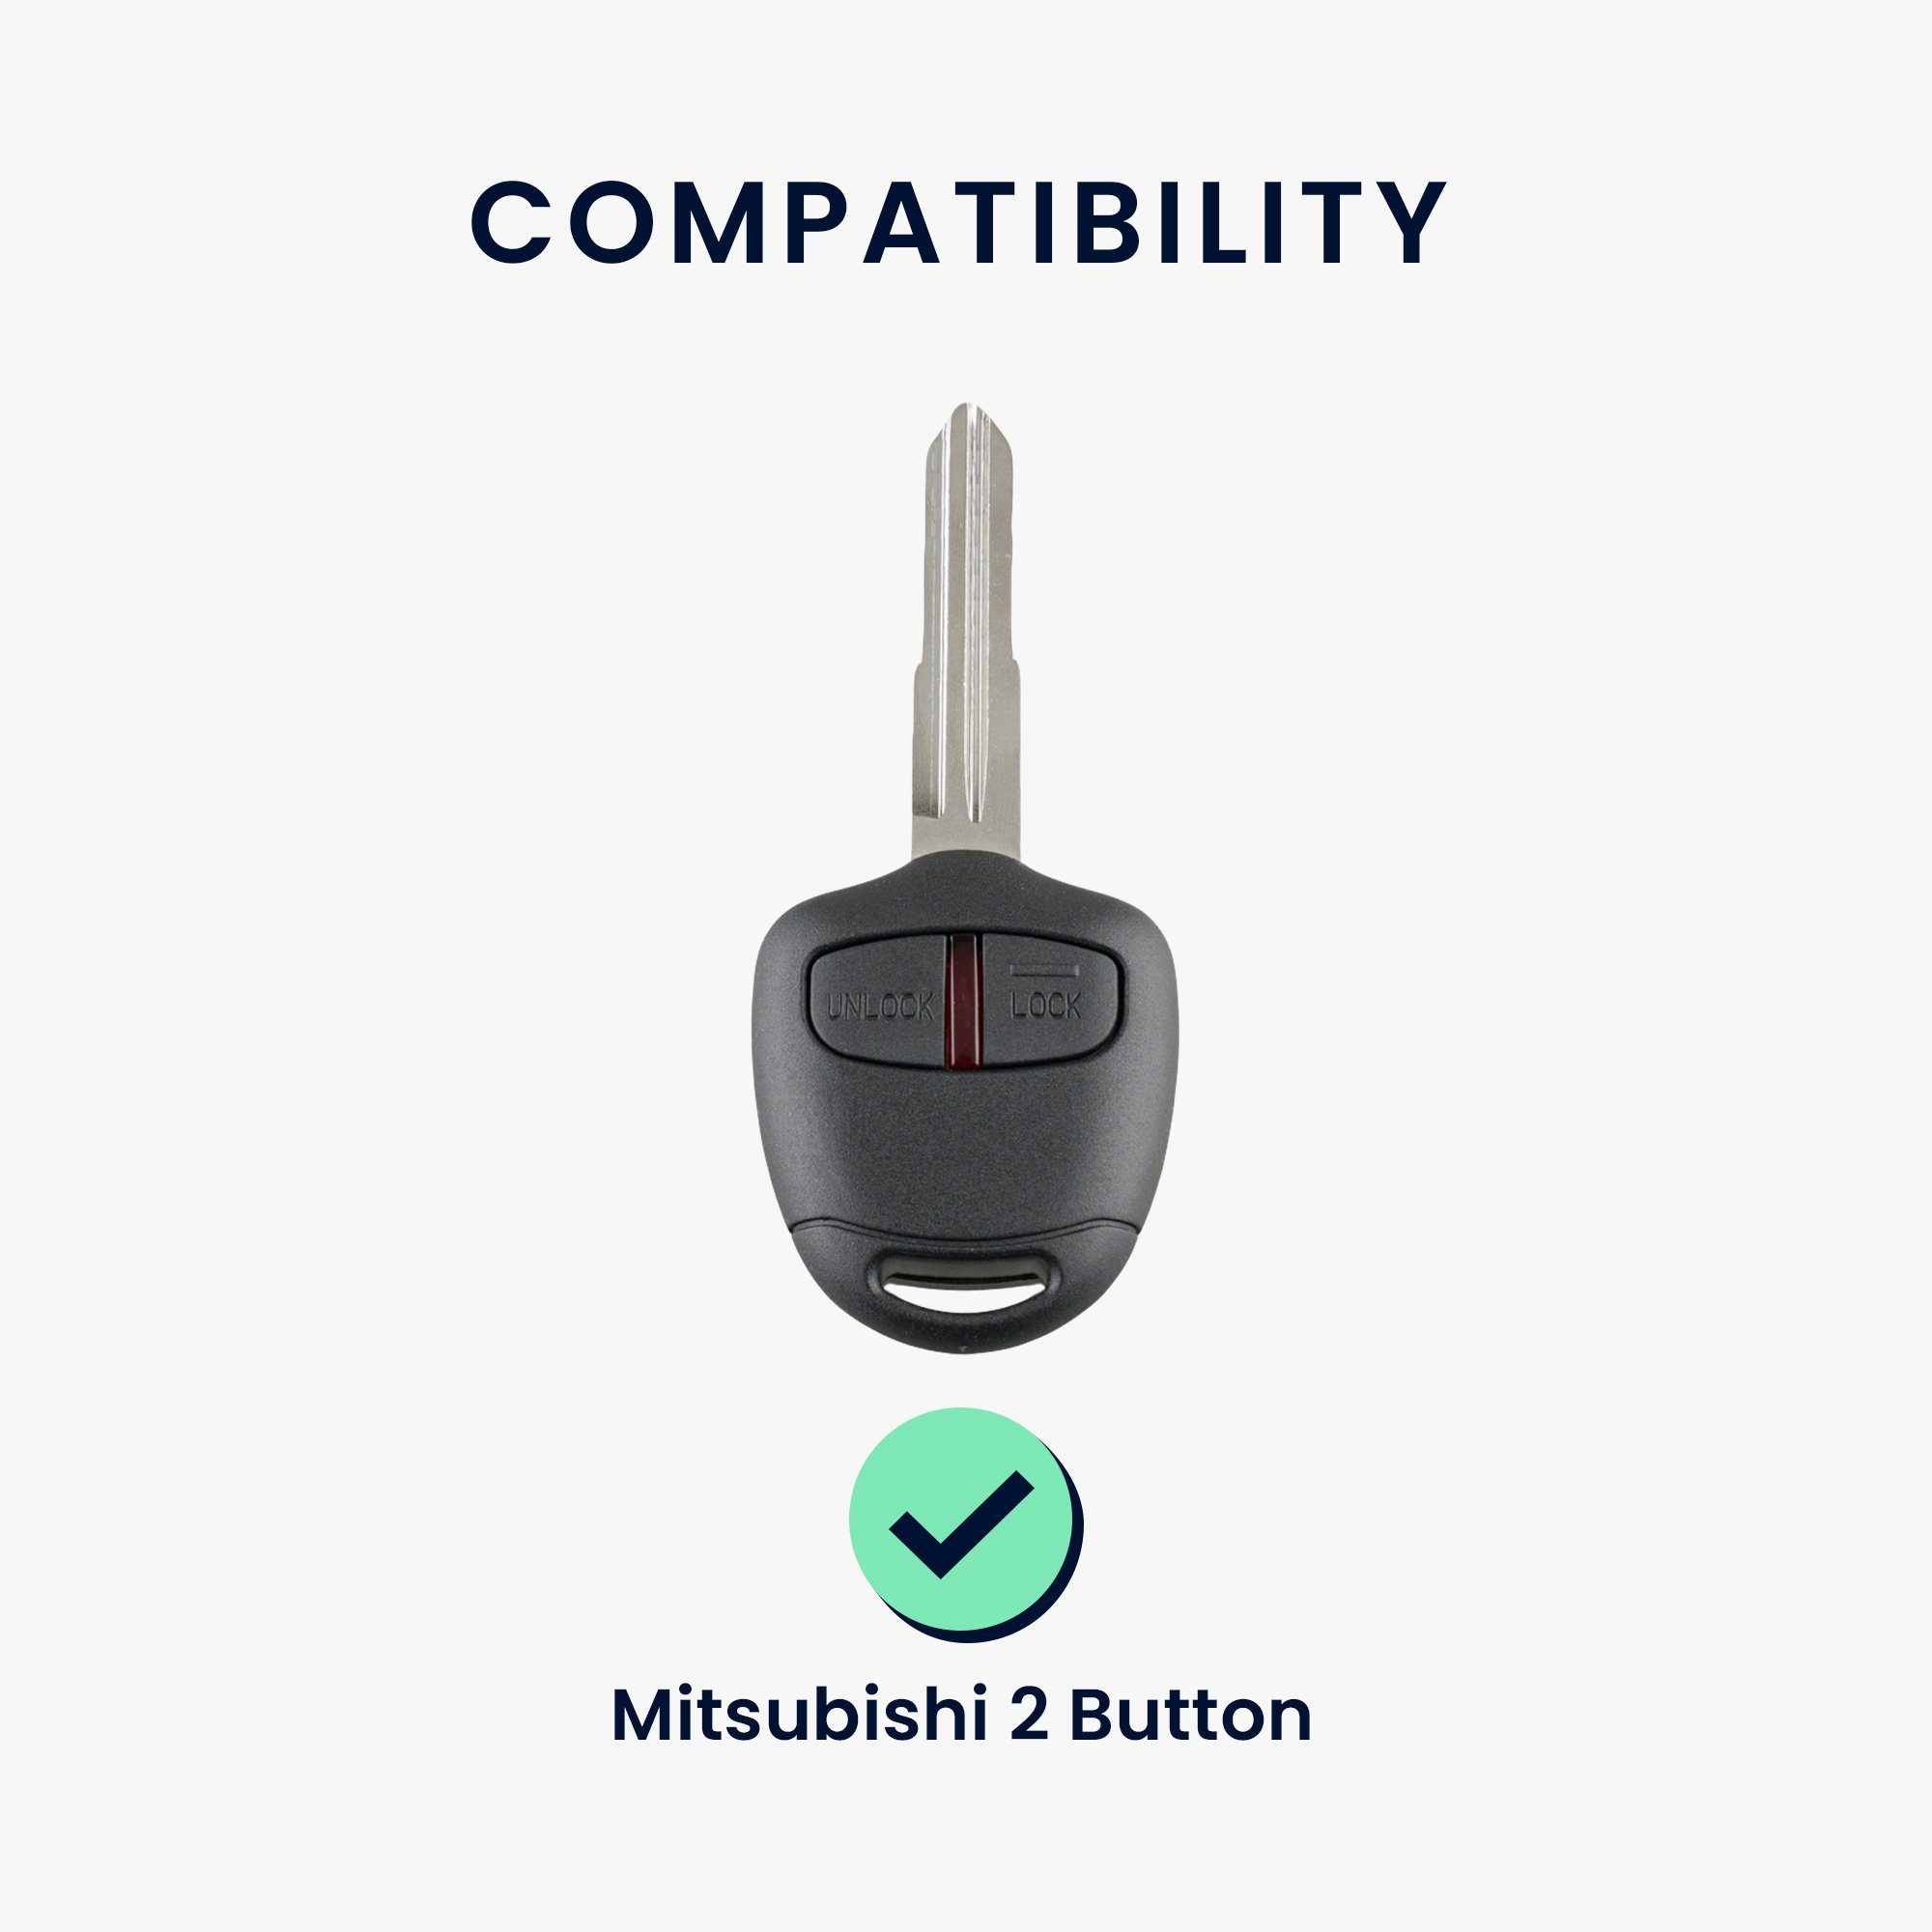 Cover Case Schlüsselhülle Schlüssel Mitsubishi für Autoschlüssel kwmobile 2-Tasten Schlüsseltasche Hülle Silikon Autoschlüssel,